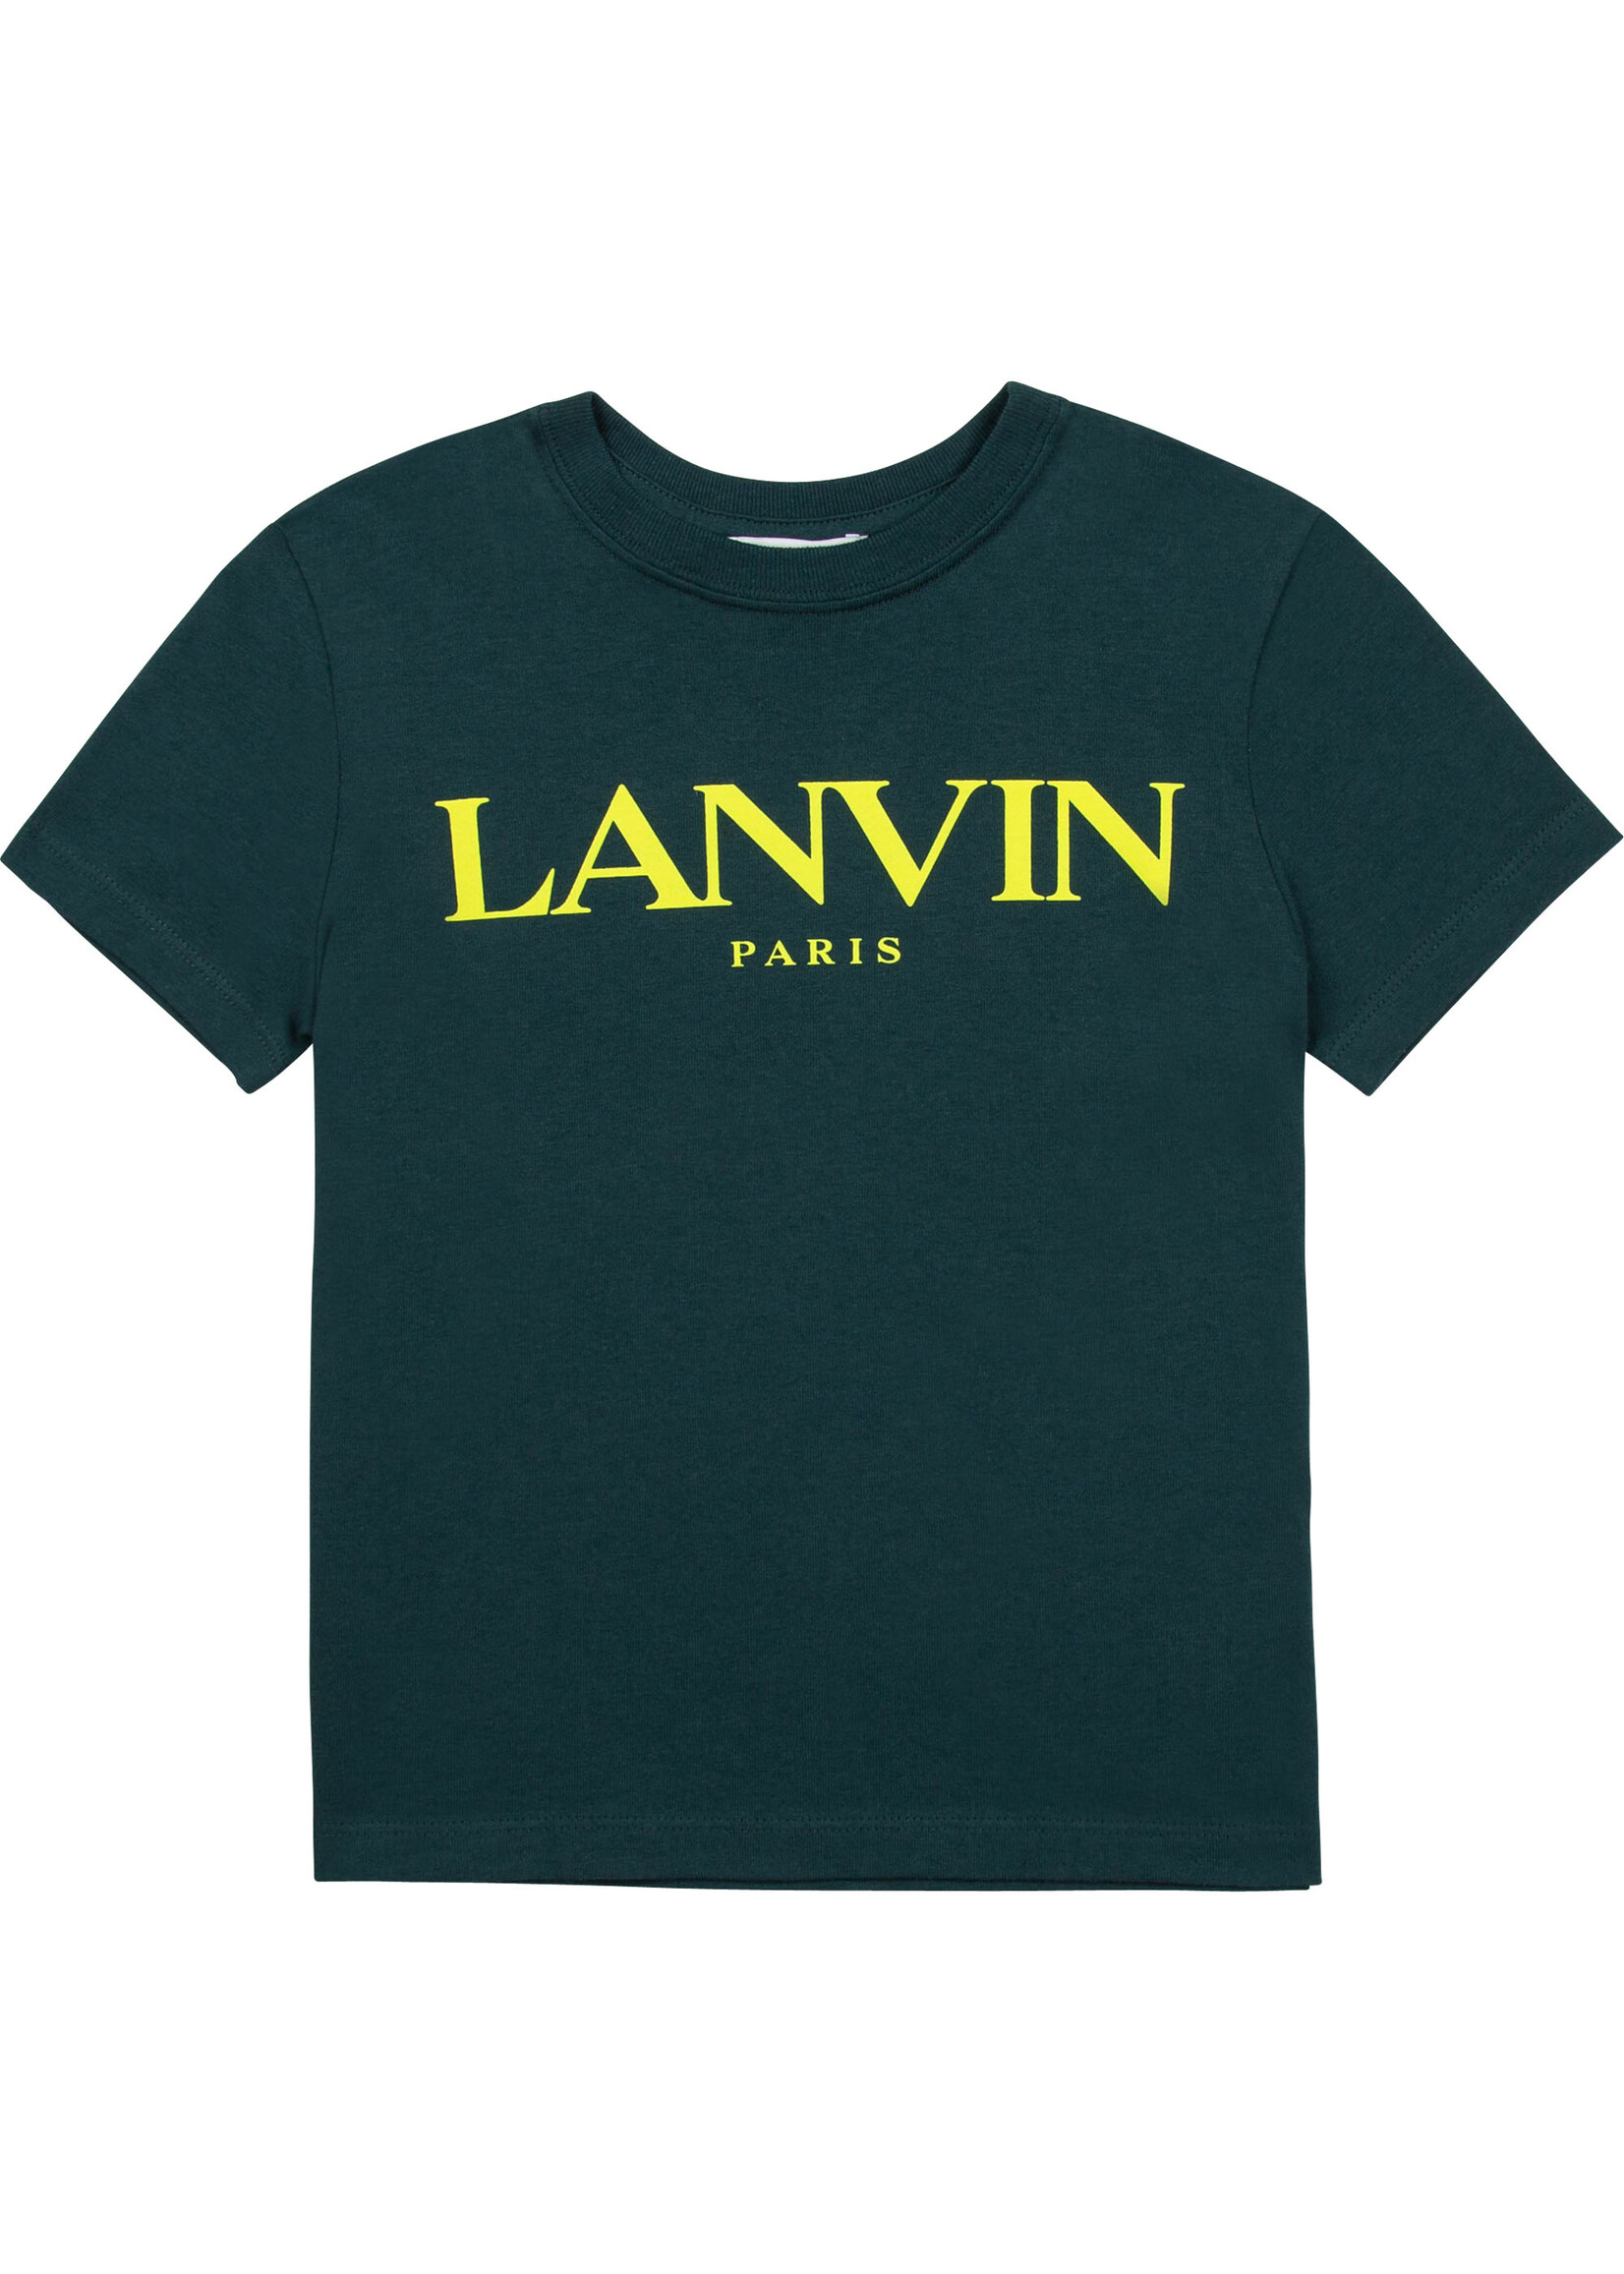 Lanvin LANVIN Tshirt logo dark green - N25041